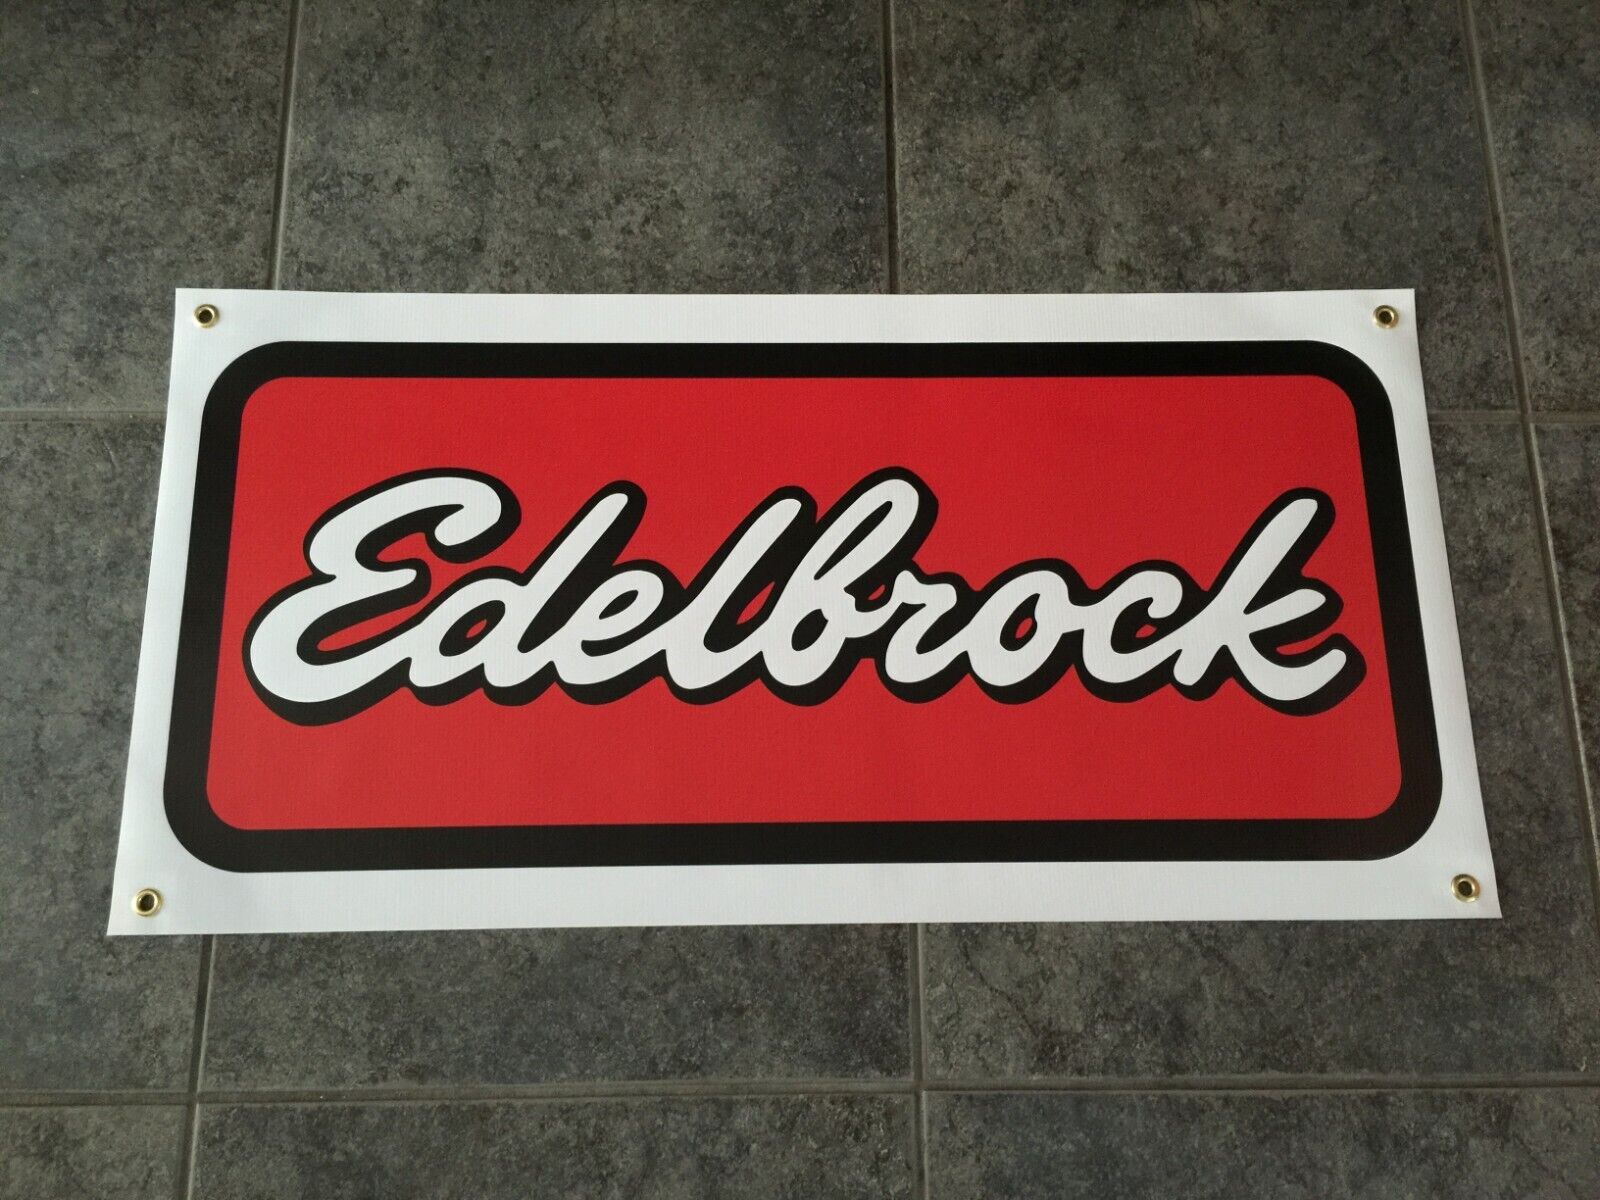 Edelbrock banner sign shop wall garage carburetor intake manifold air intake